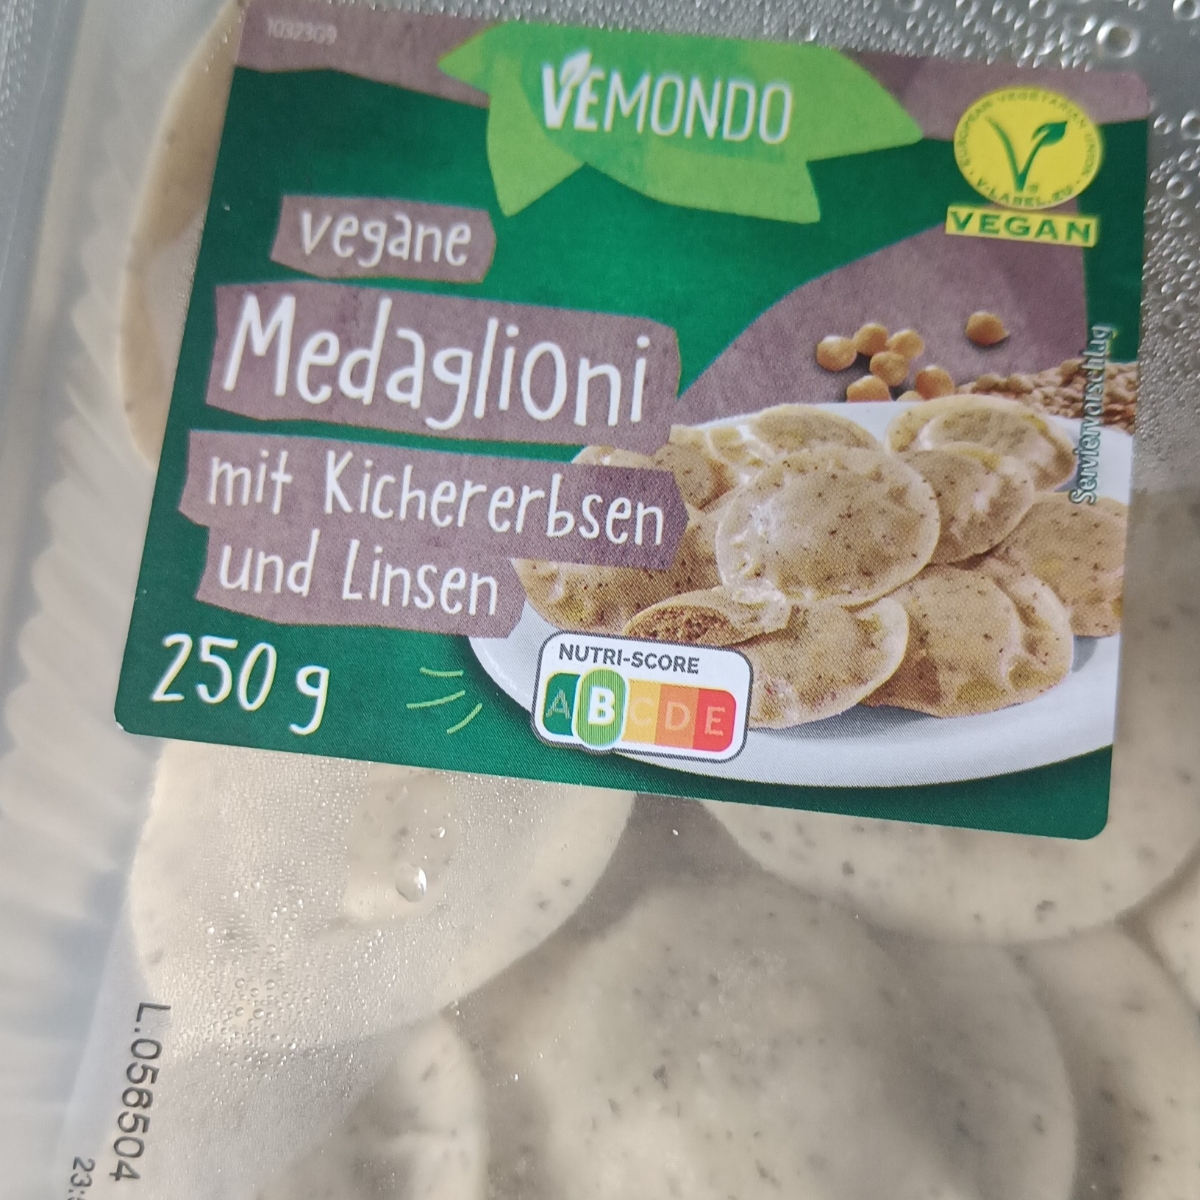 Vemondo Vegane Medaglioni mit Kichererbsen und Linsen Review | abillion | Vemondo